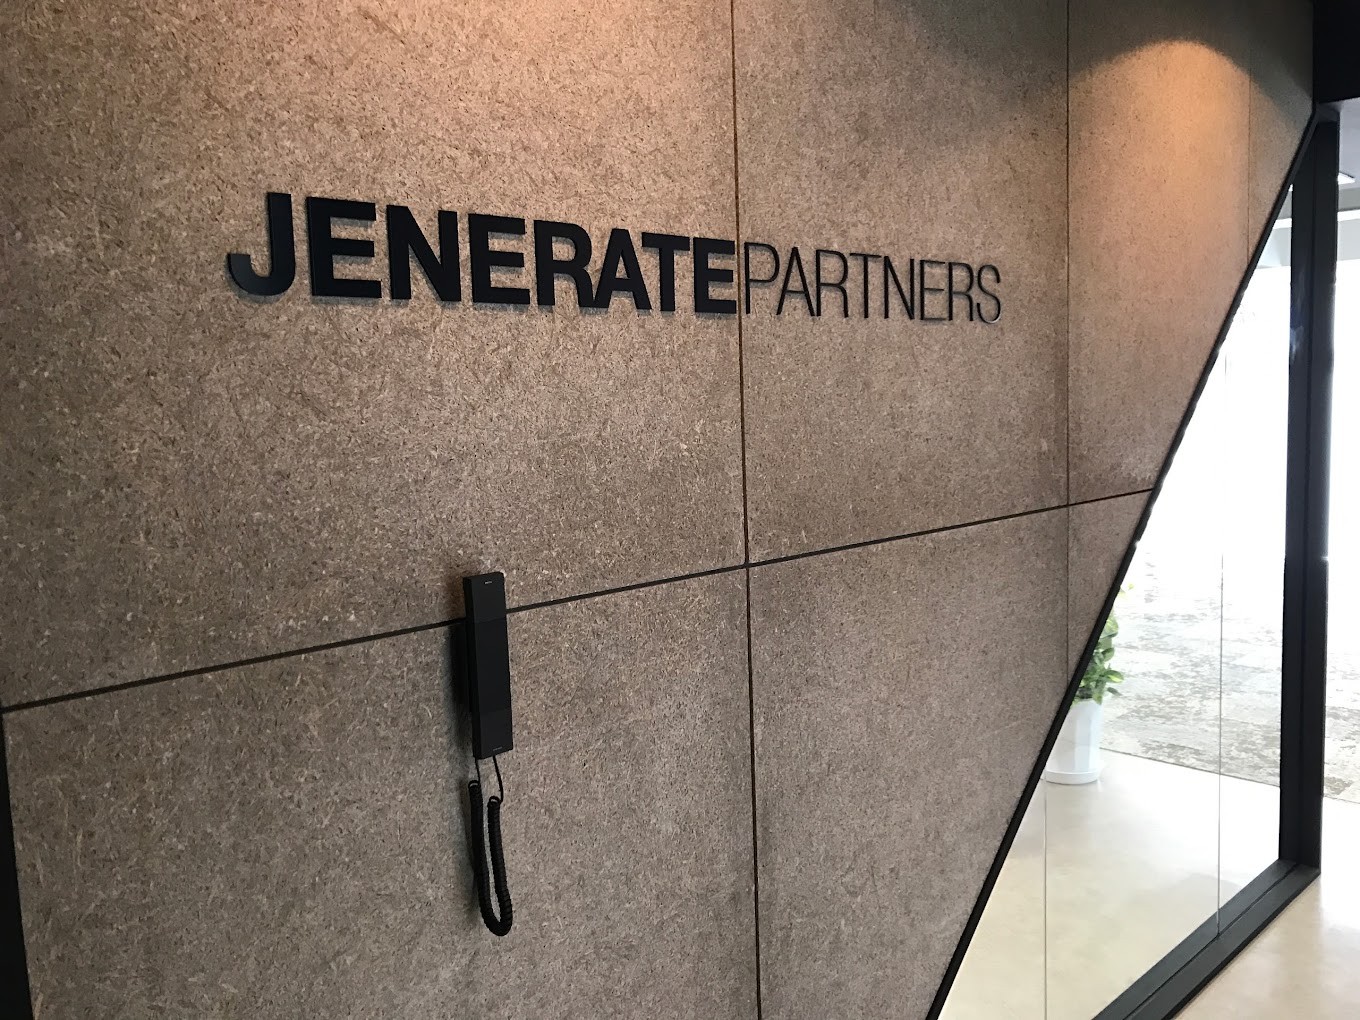 Jenerate Partners株式会社のJenerate Partners株式会社サービス